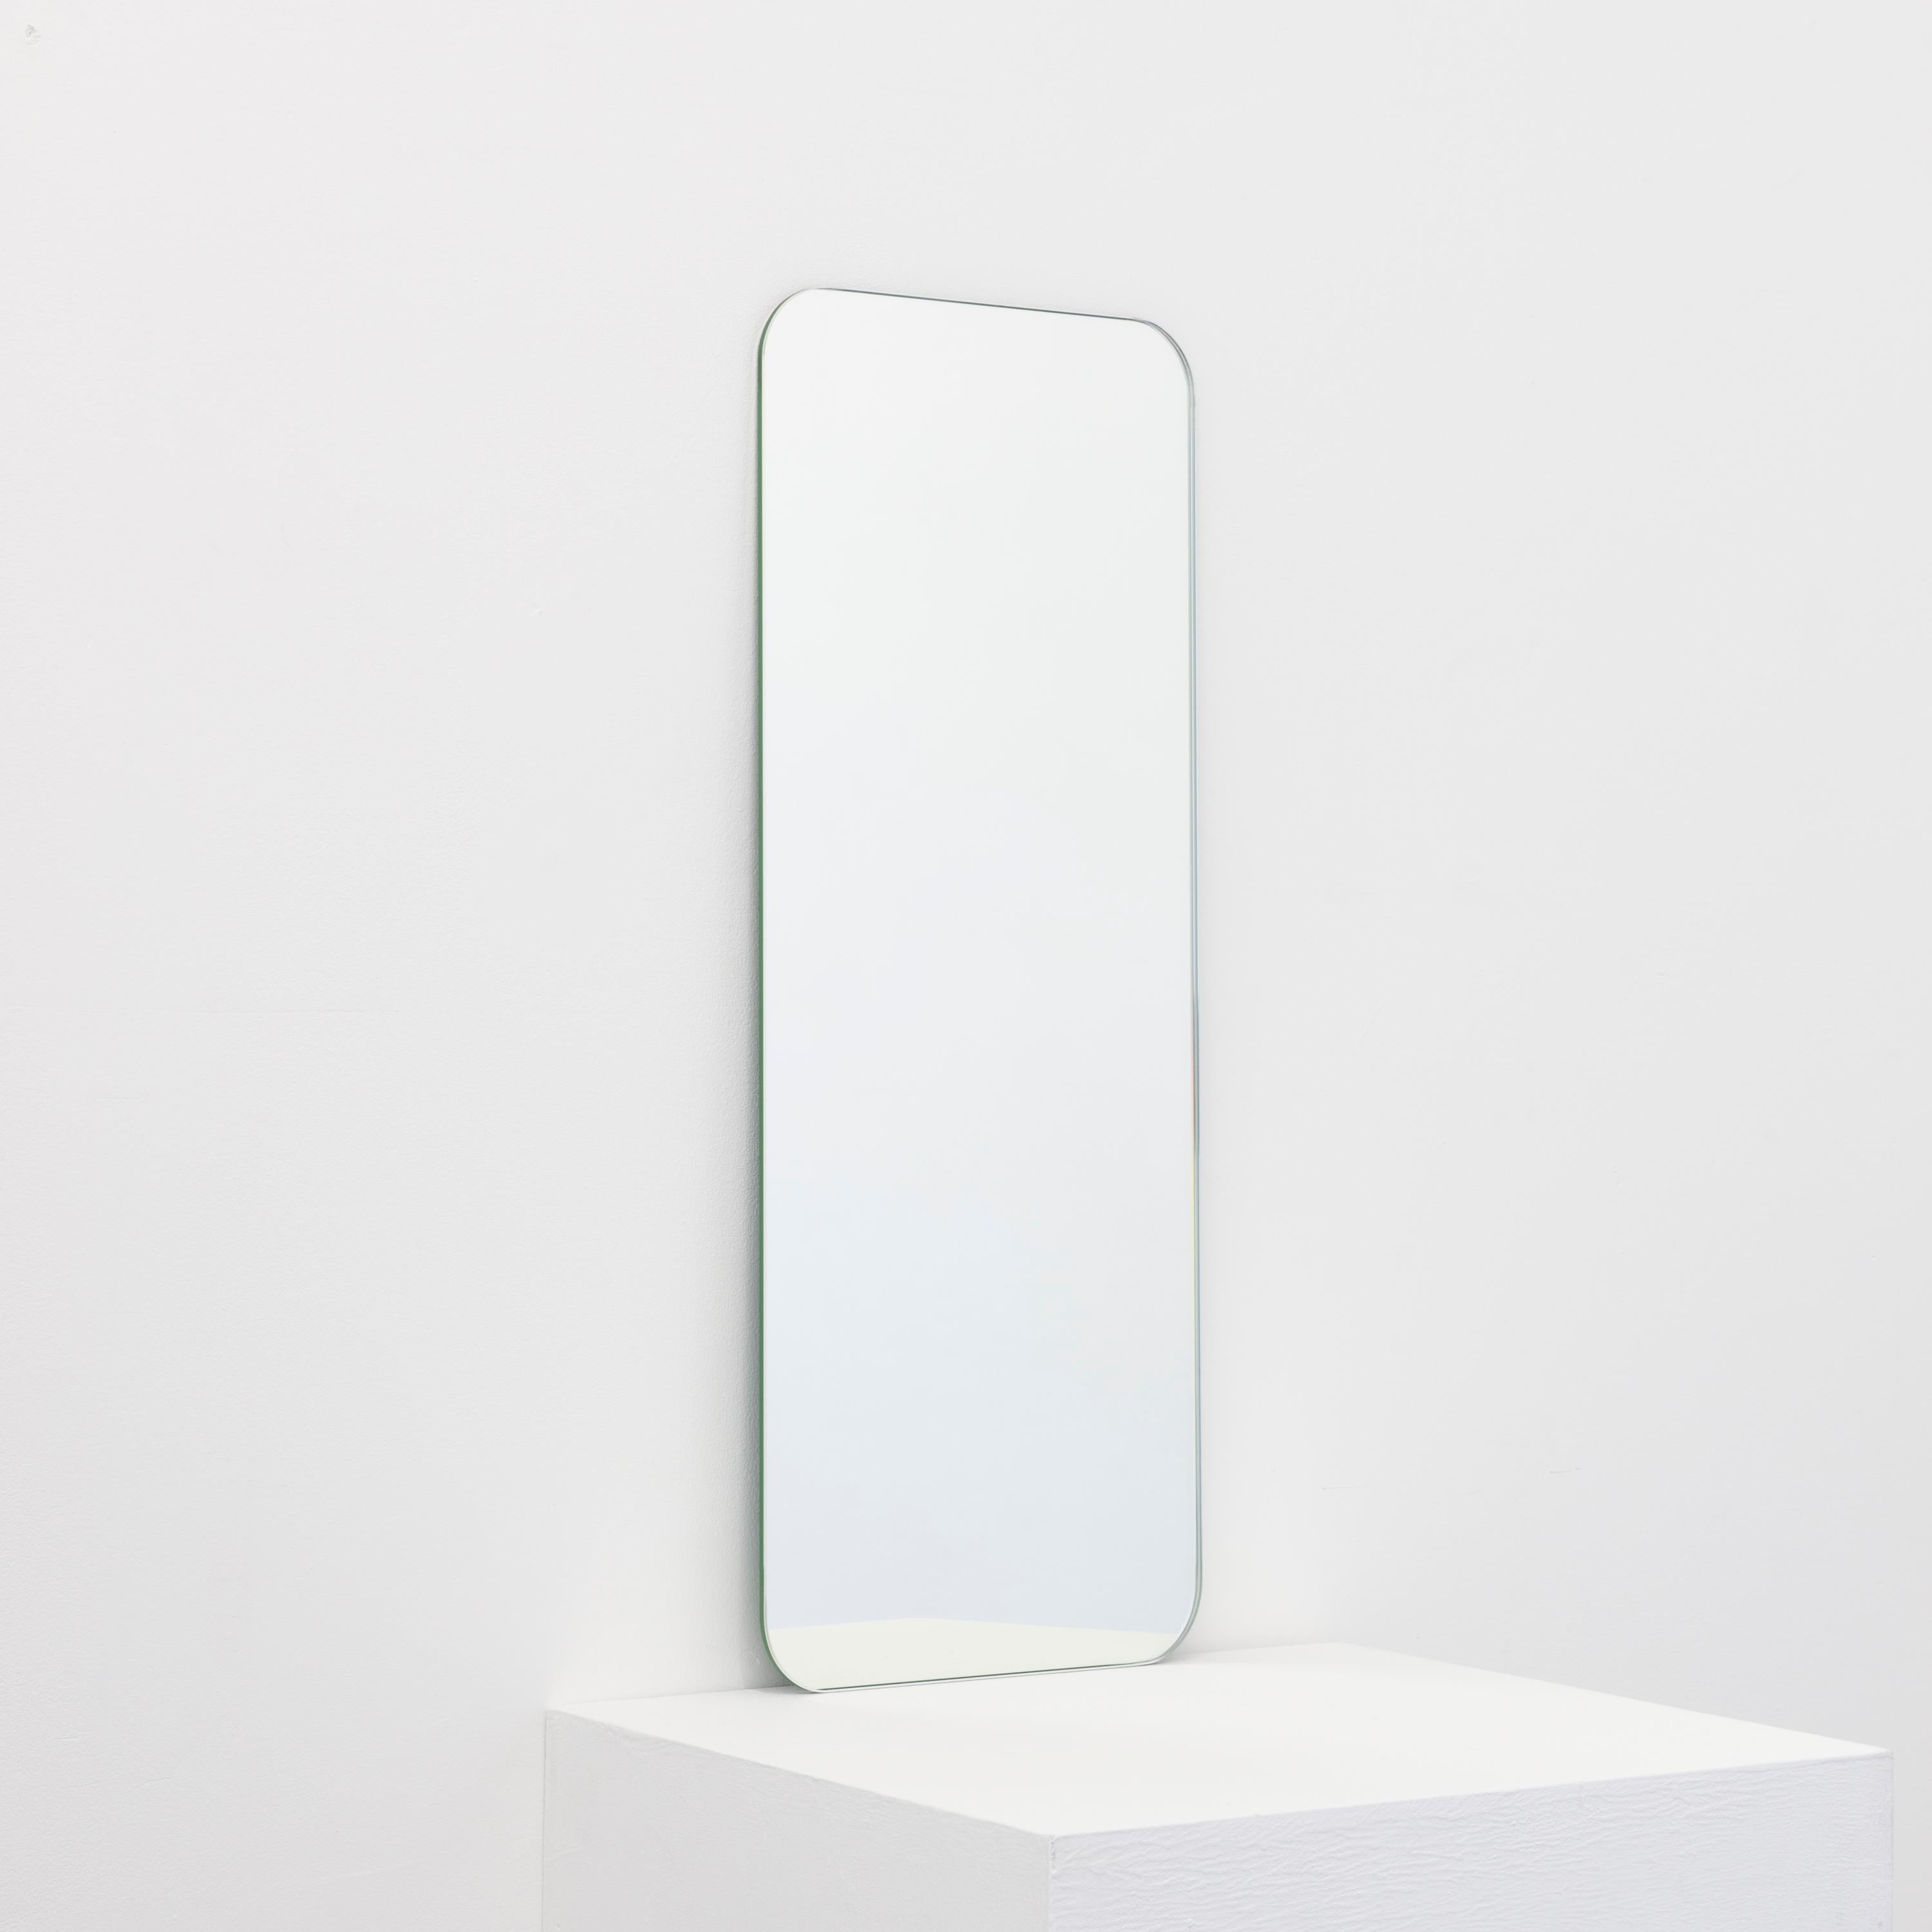 Miroir sans cadre de forme rectangulaire minimaliste avec un effet flottant. Un design de qualité qui garantit que le miroir est parfaitement parallèle au mur. Conçu et fabriqué à Londres, au Royaume-Uni.

Equipé de plaques professionnelles non